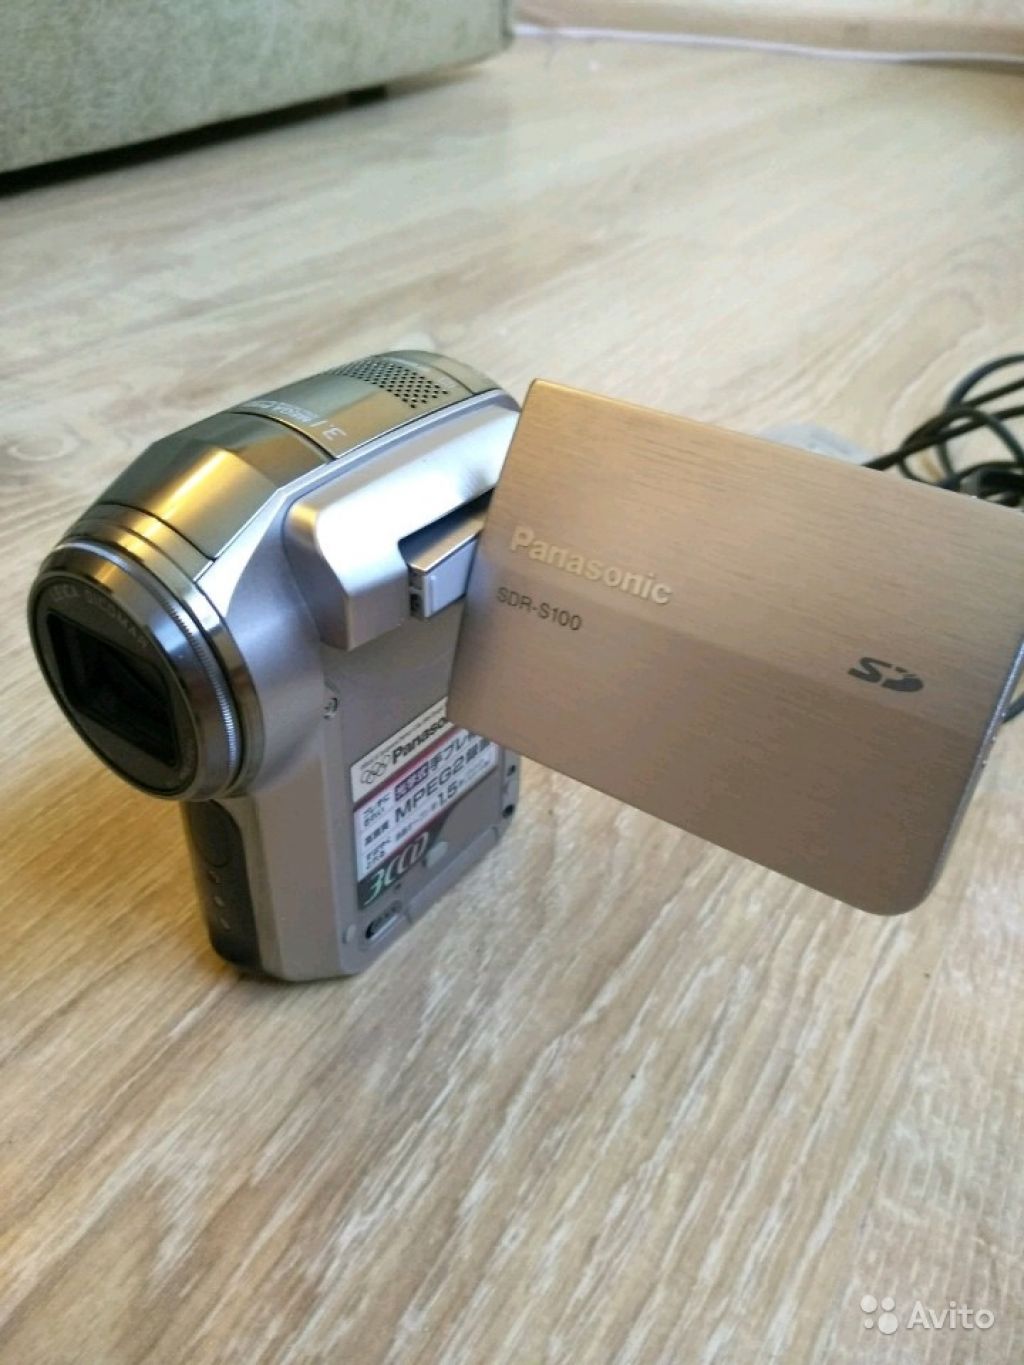 Видеокамера Panasonic SDR-S100 в Москве. Фото 1